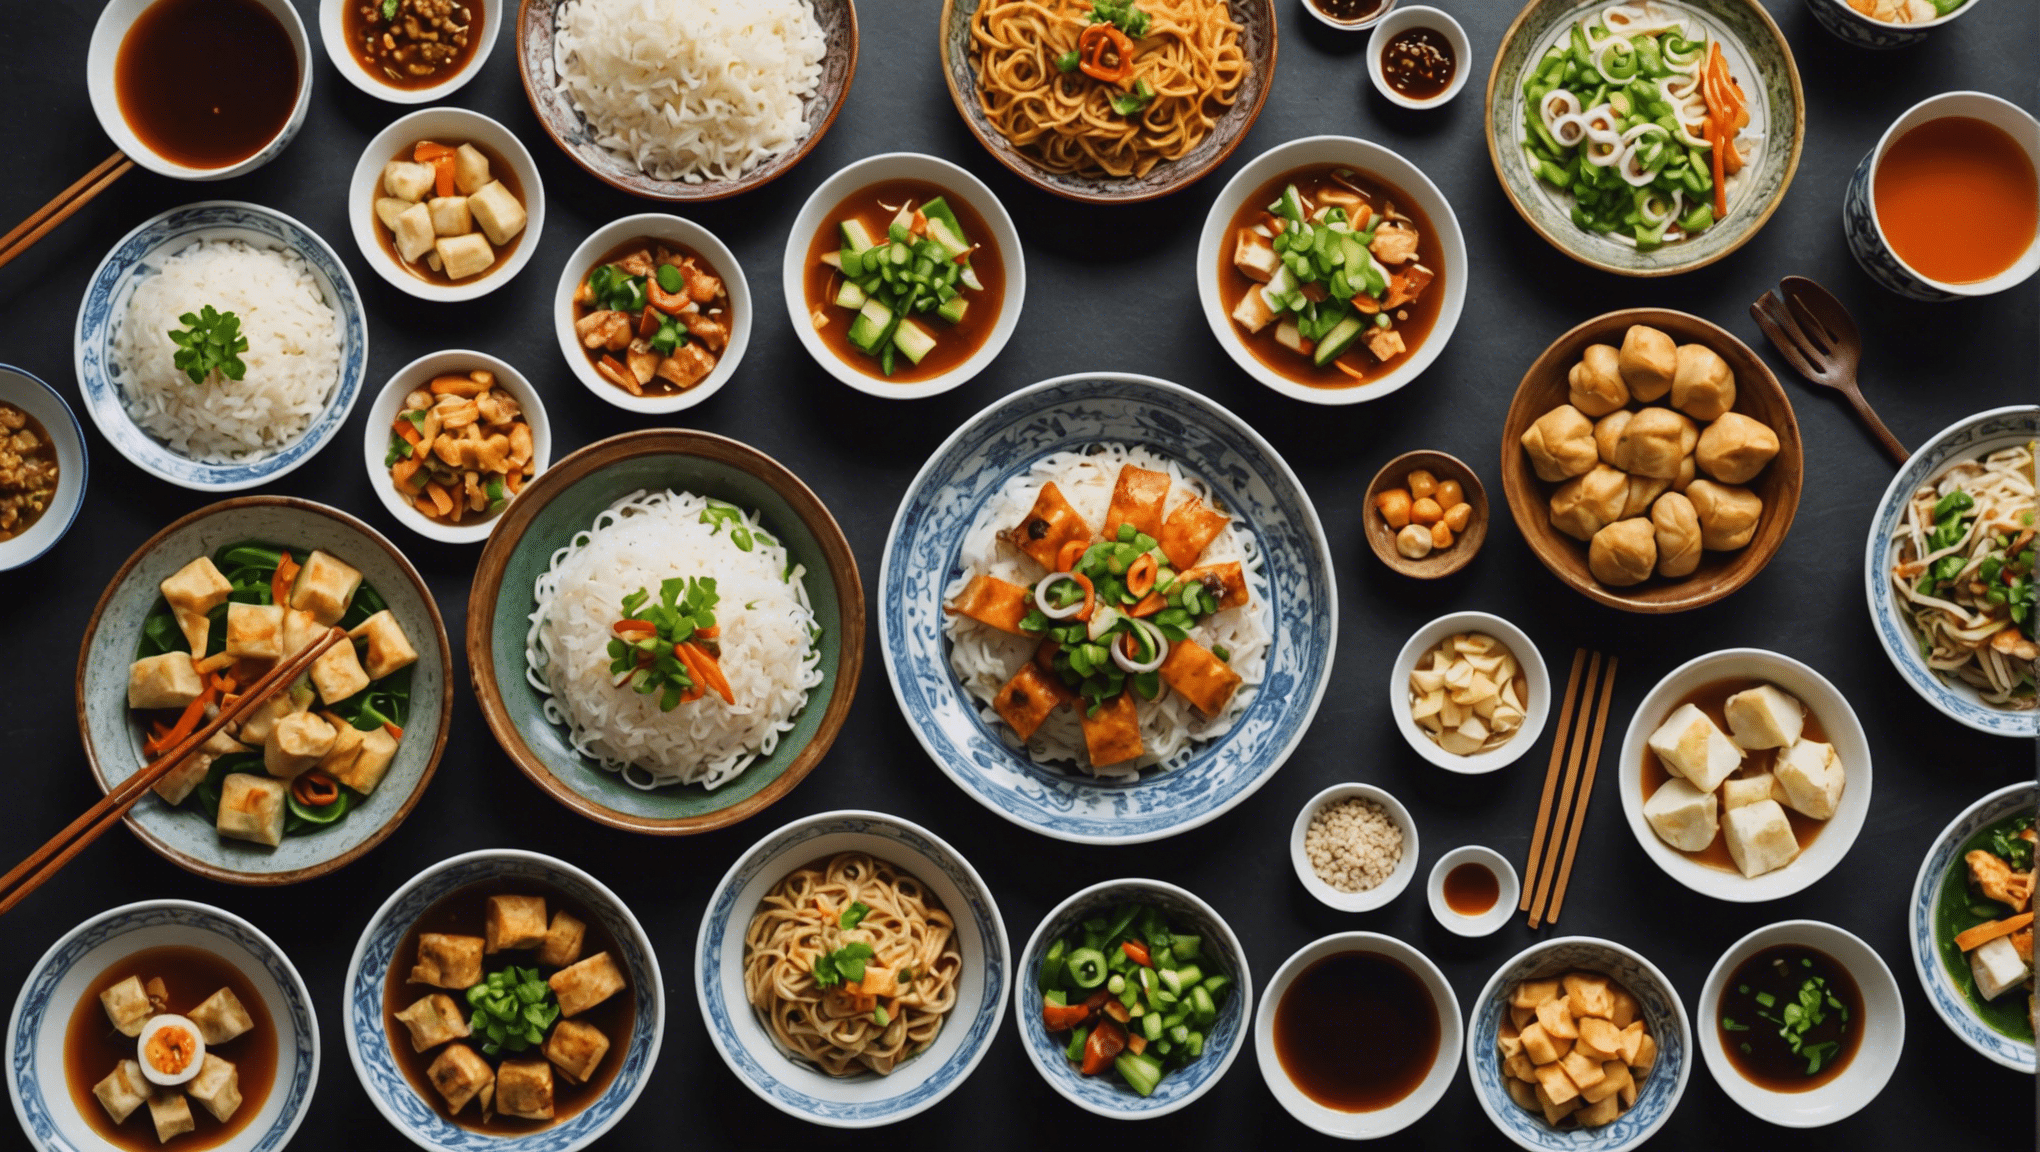 découvrez les délices de la gastronomie asiatique lors d'un voyage culinaire en asie et laissez-vous emporter par les saveurs exotiques et les traditions culinaires uniques de la région.